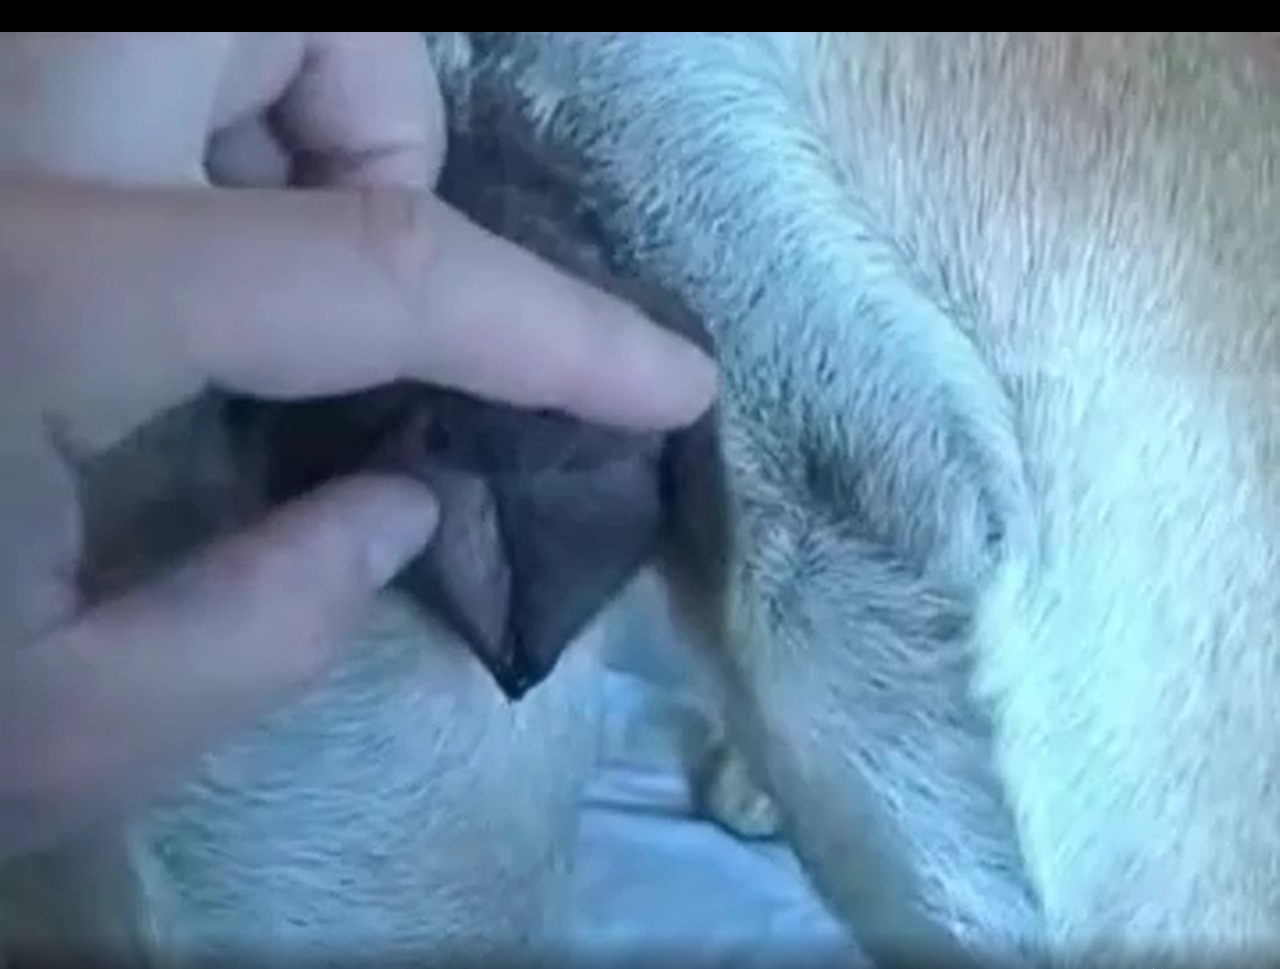 мужчина собака секс видео мужчина трахает собаку видео фото 88